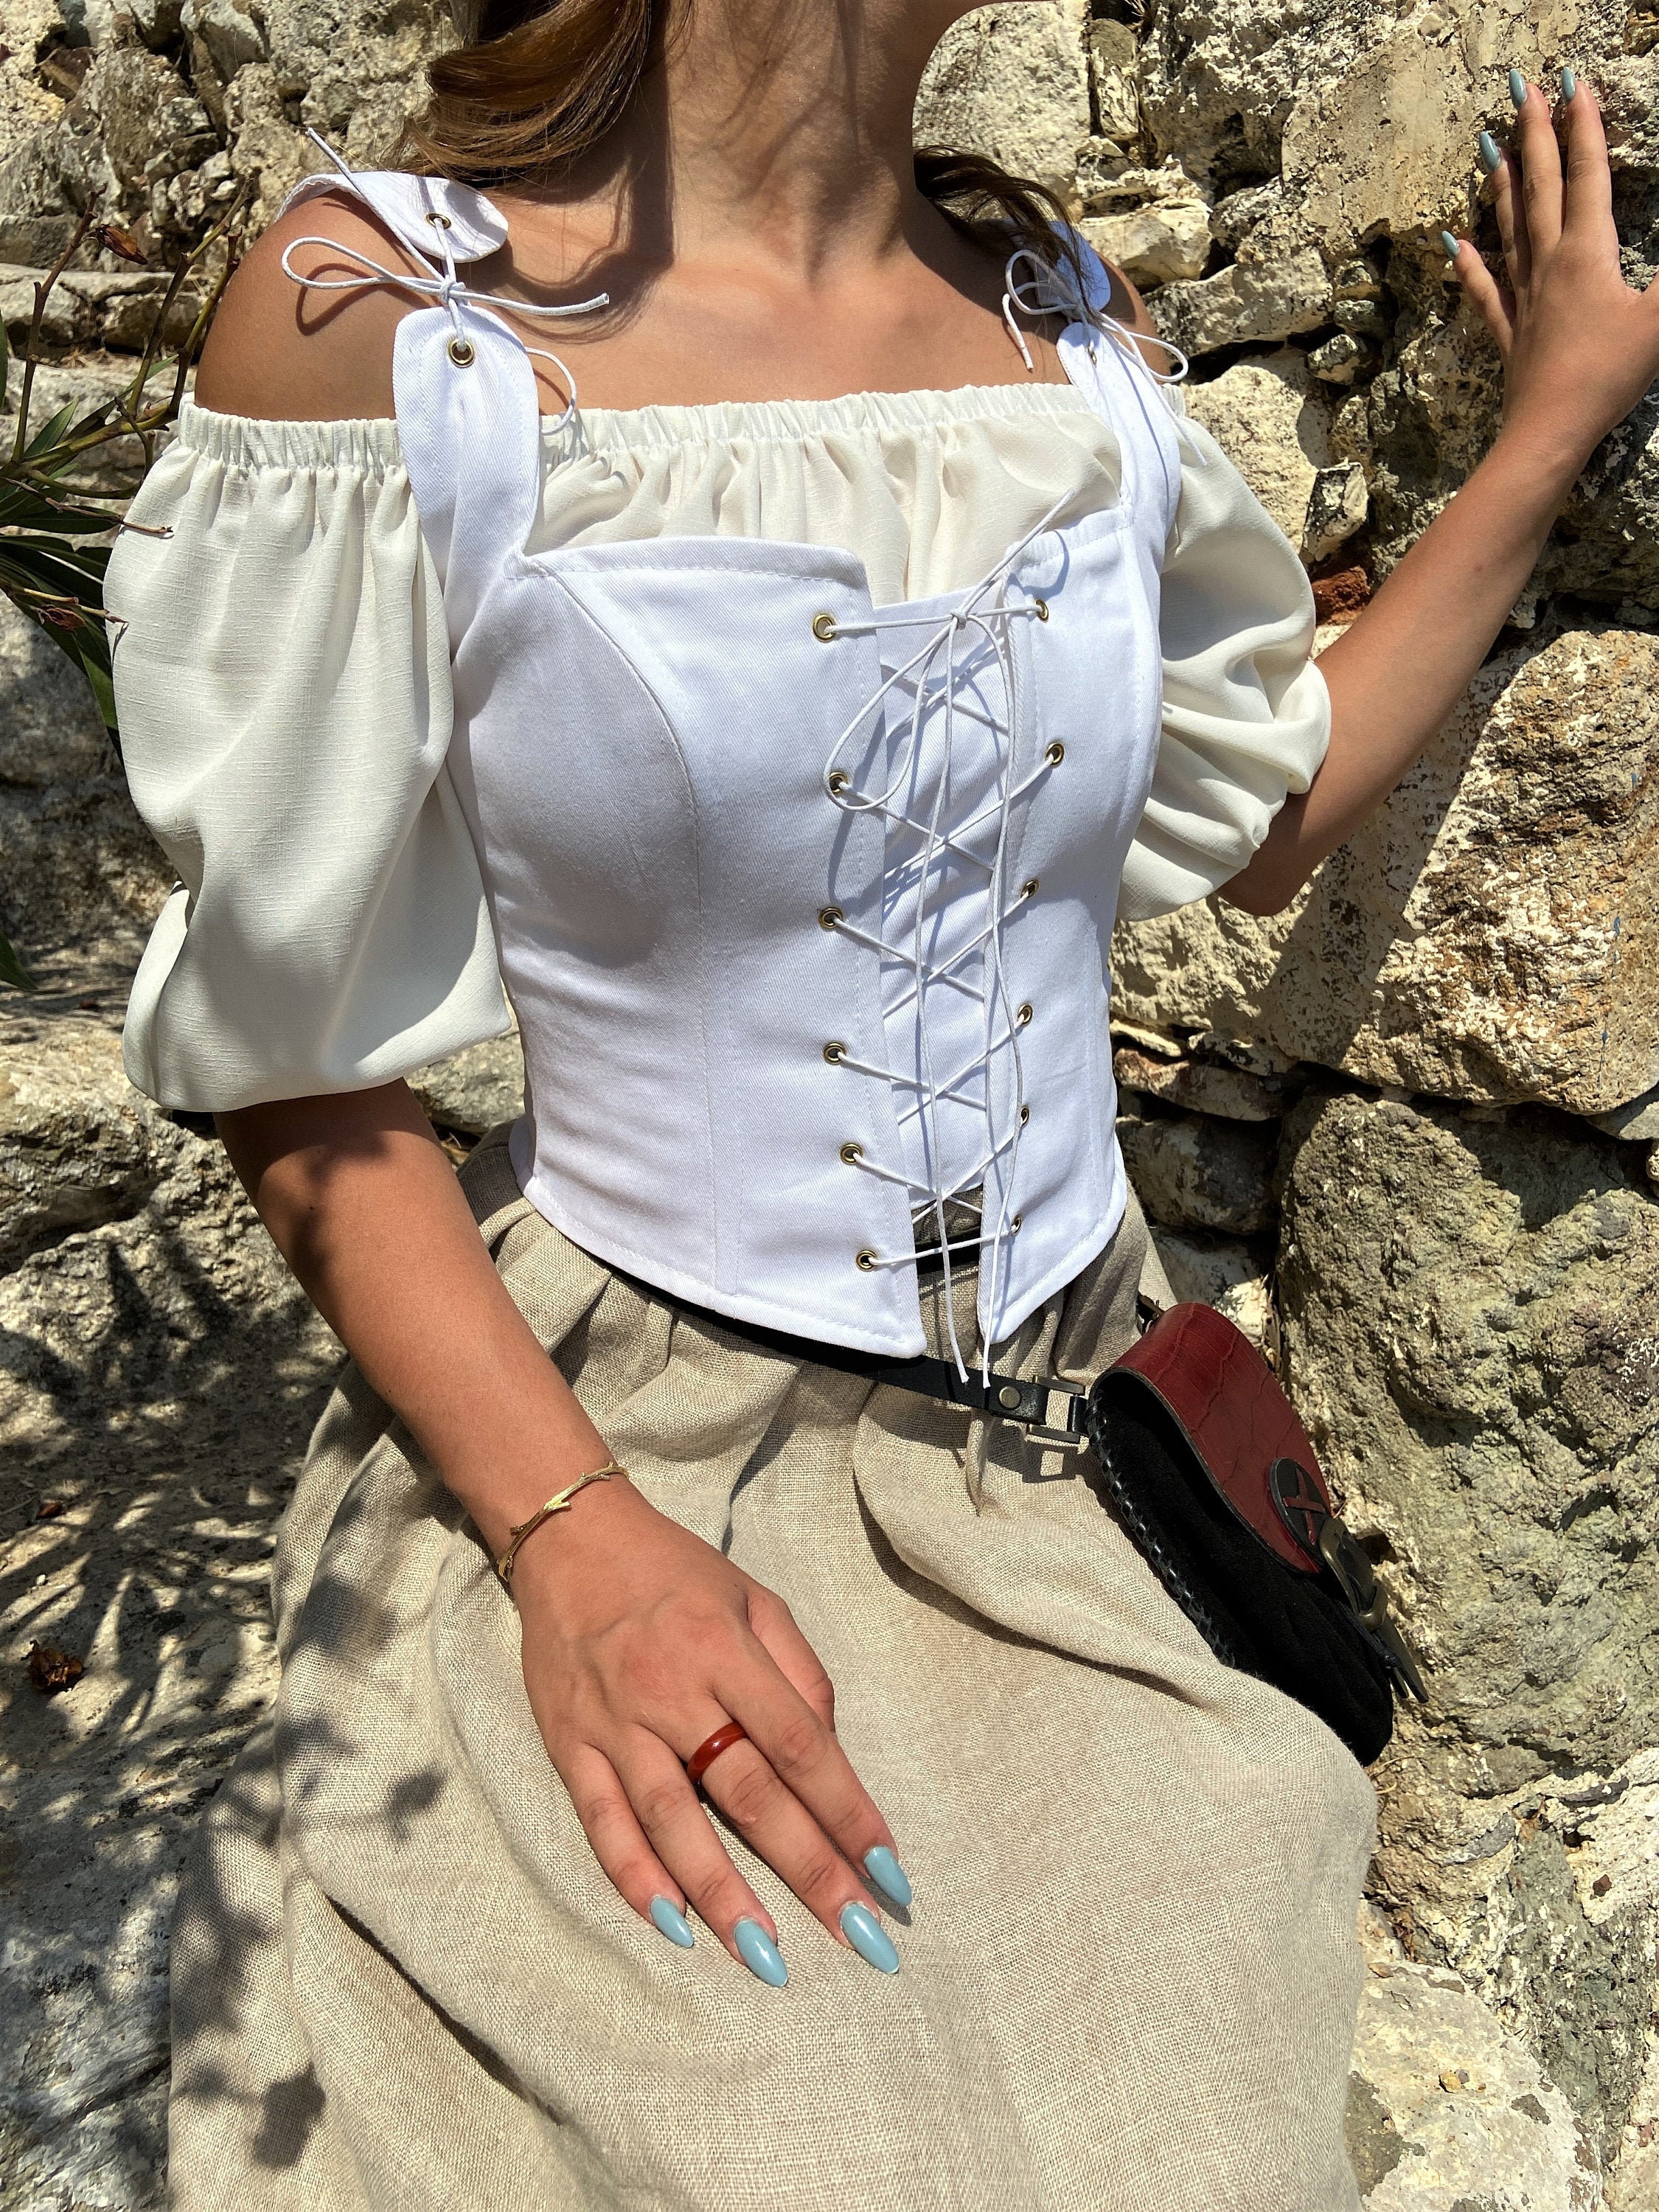 Renaissance Corset Peasant Bodice, Ren Fair Corset, Corset Stays, Shapewear  Vintage Clothing, Handmade Corset Bustier, White Medieval Corset 